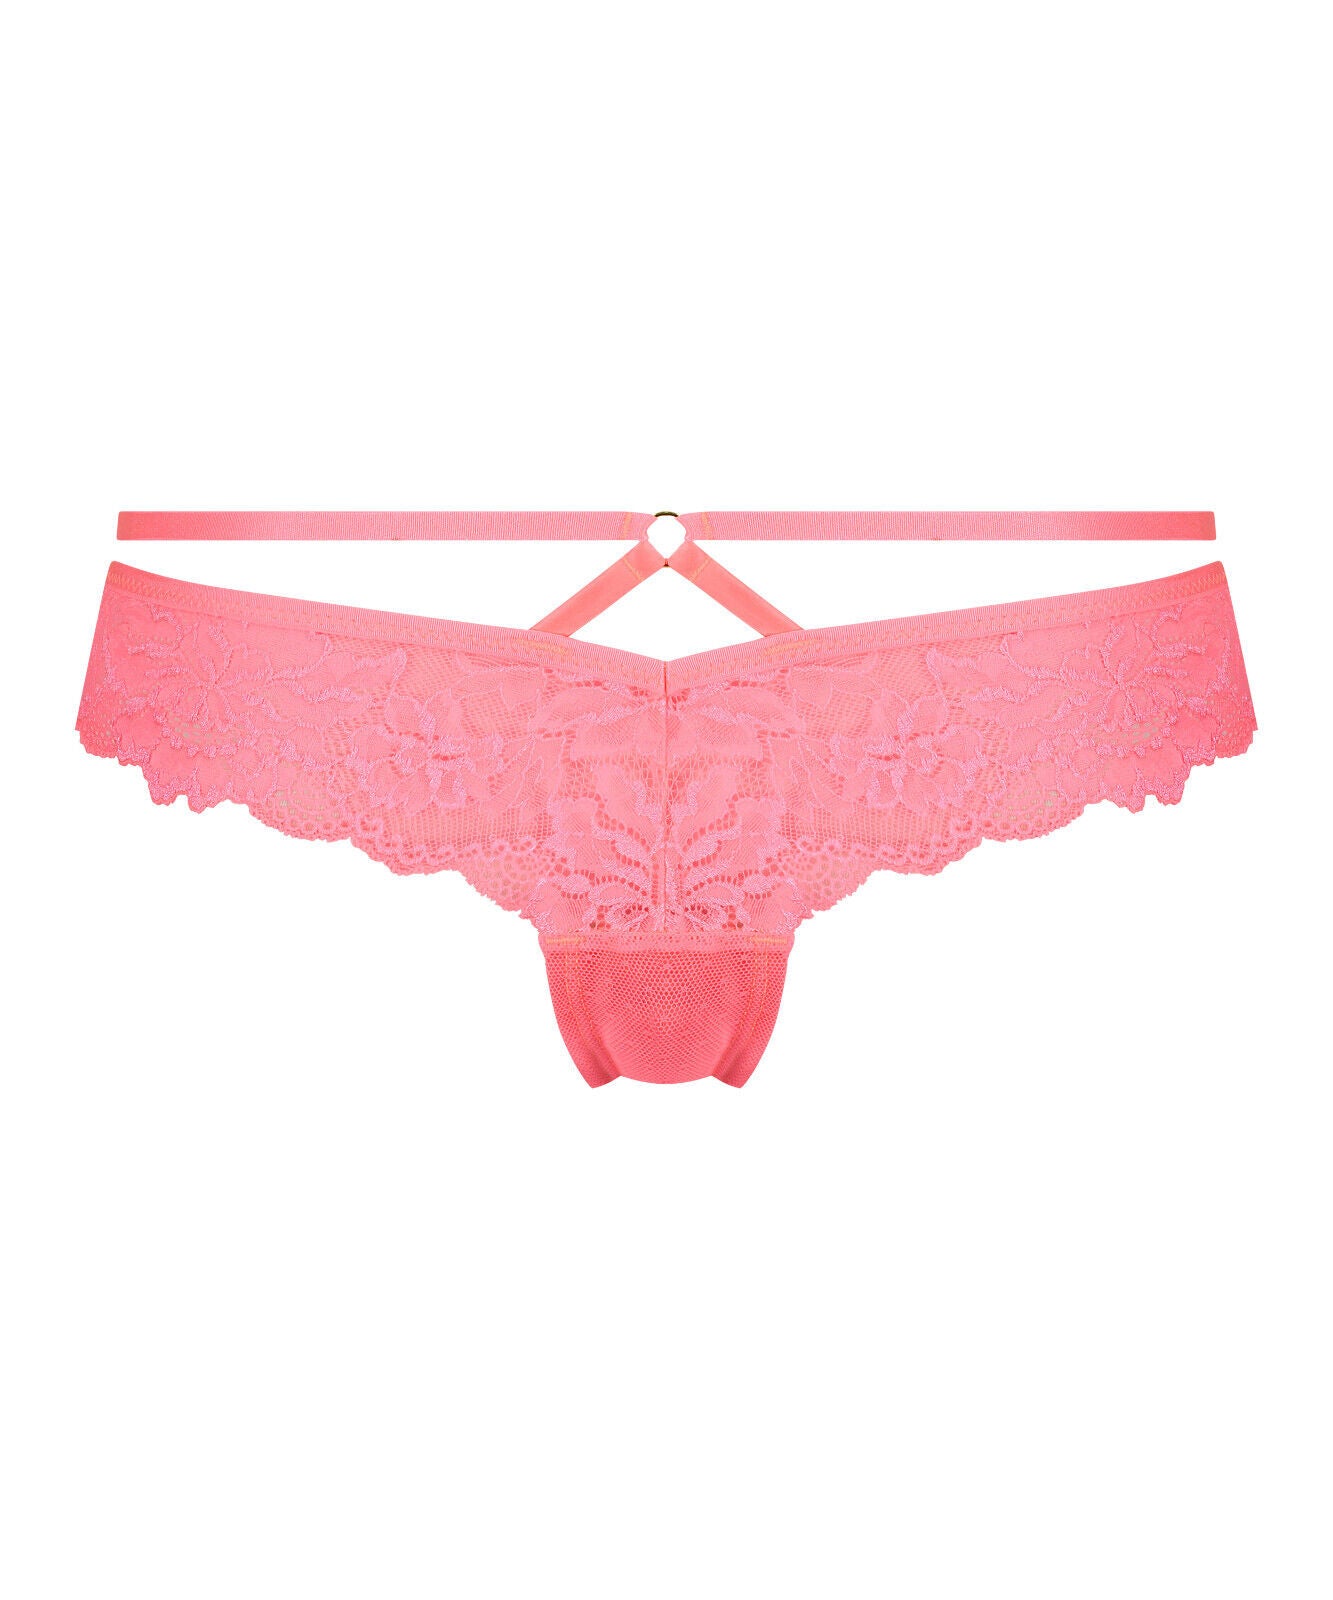 Hunkemoller Sosha Pink Brazilian Pants Size 6